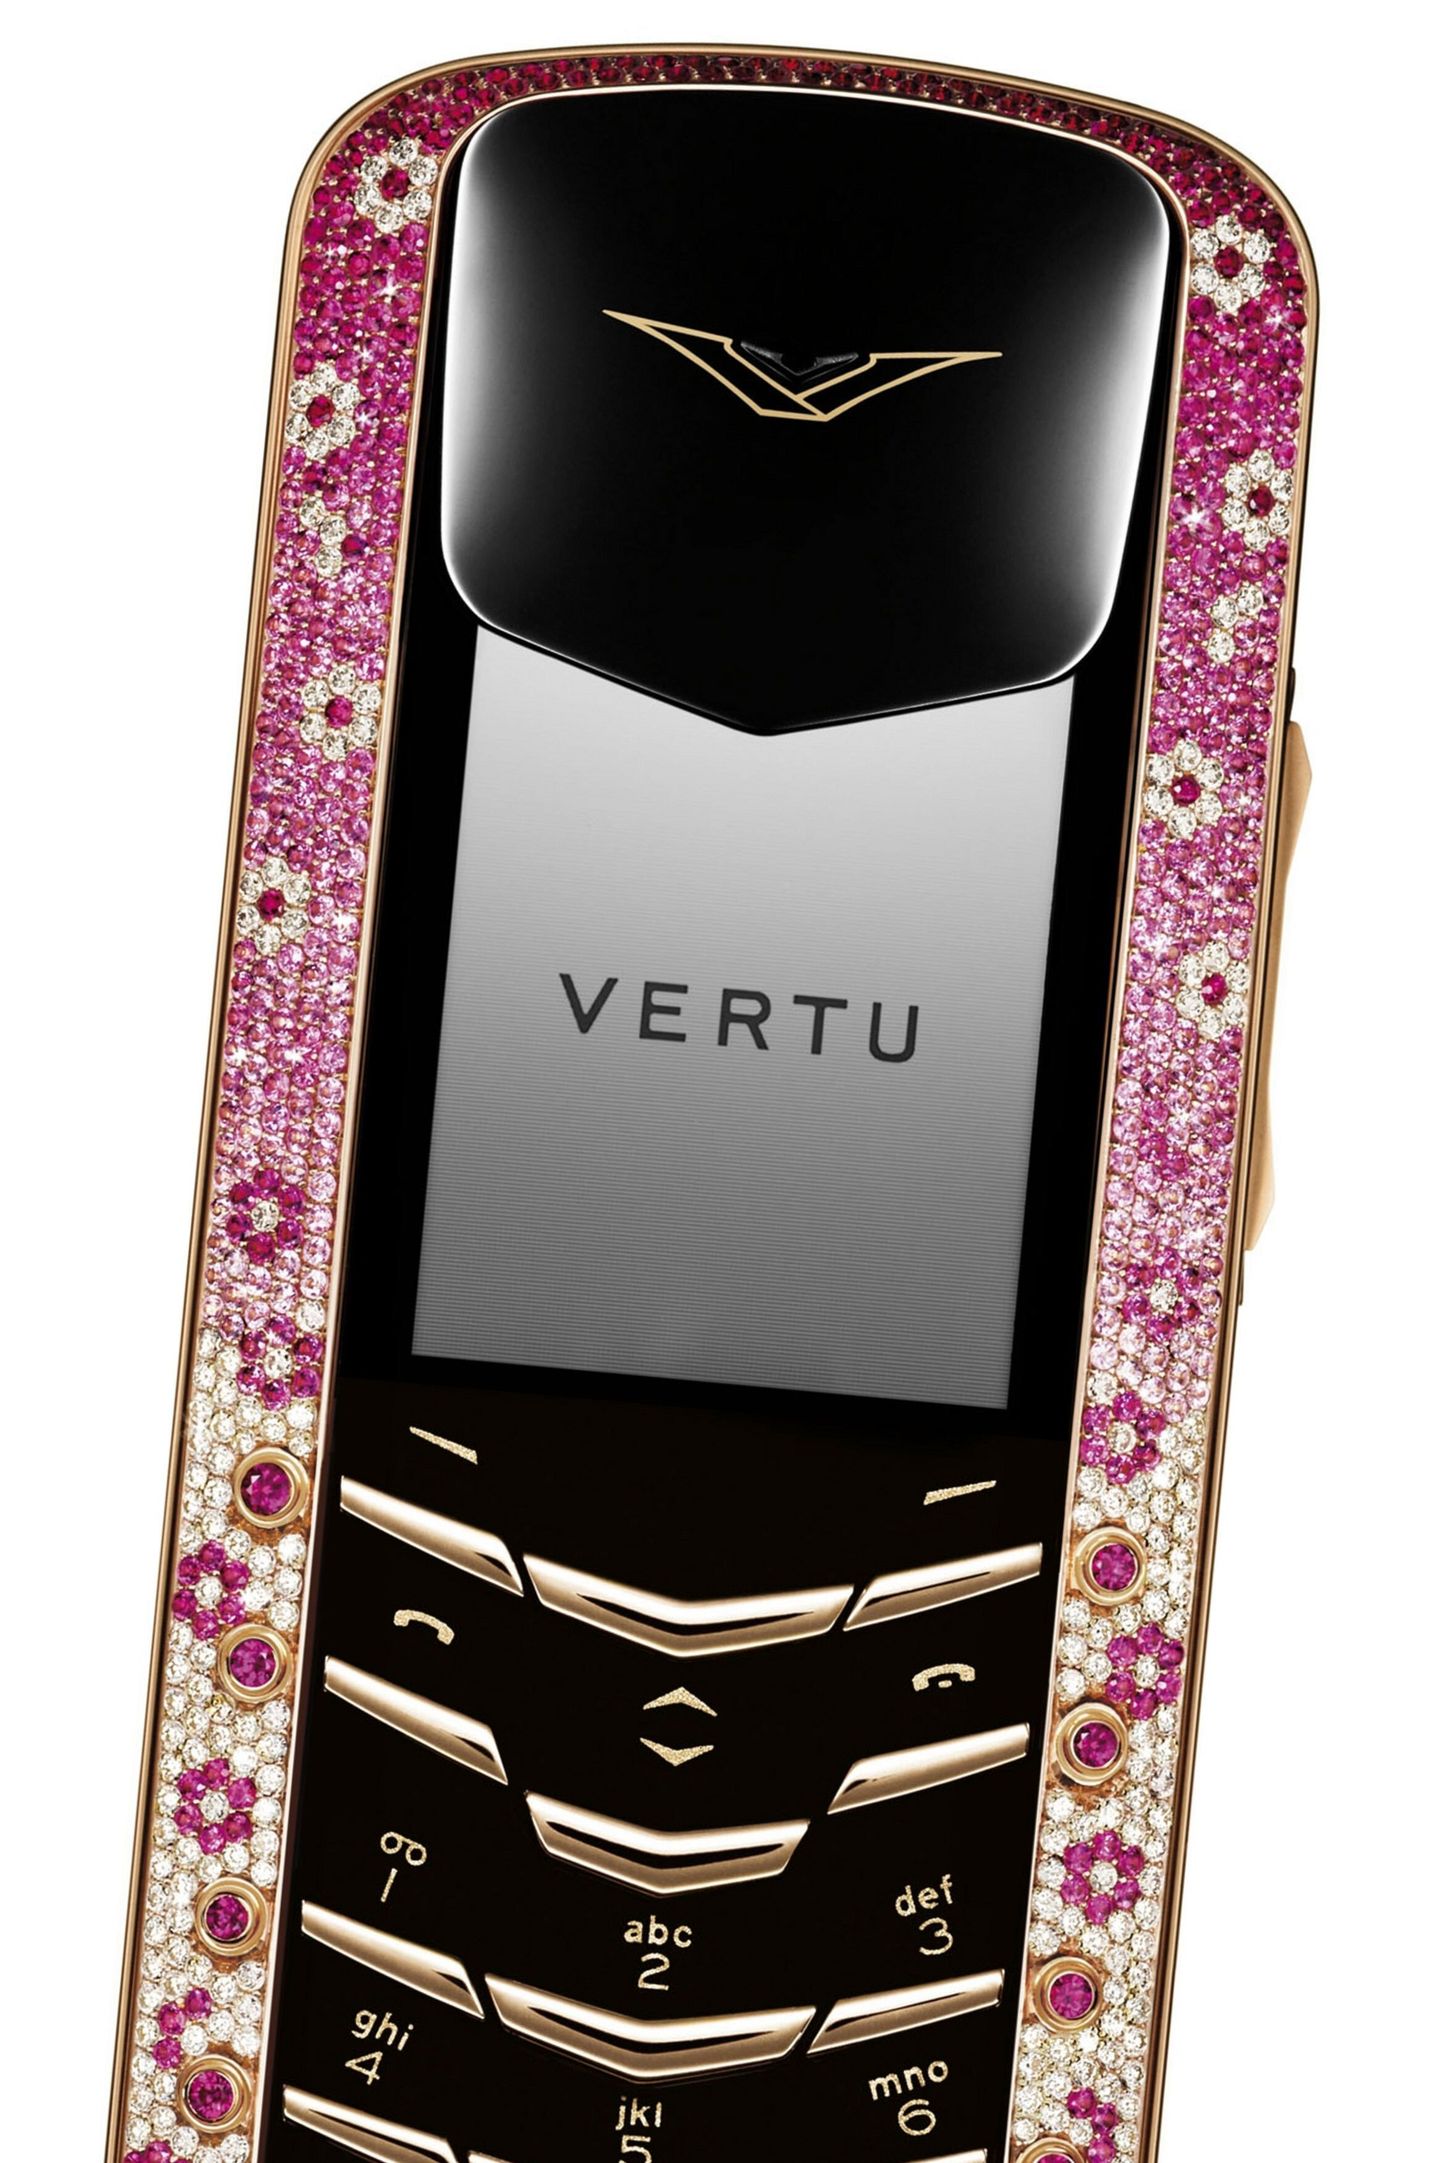 Vertu teemantitega luksustelefon «Pink Diamond Signature». Vertu telefonid võivad maksta kümneid tuhandeid eurosid.